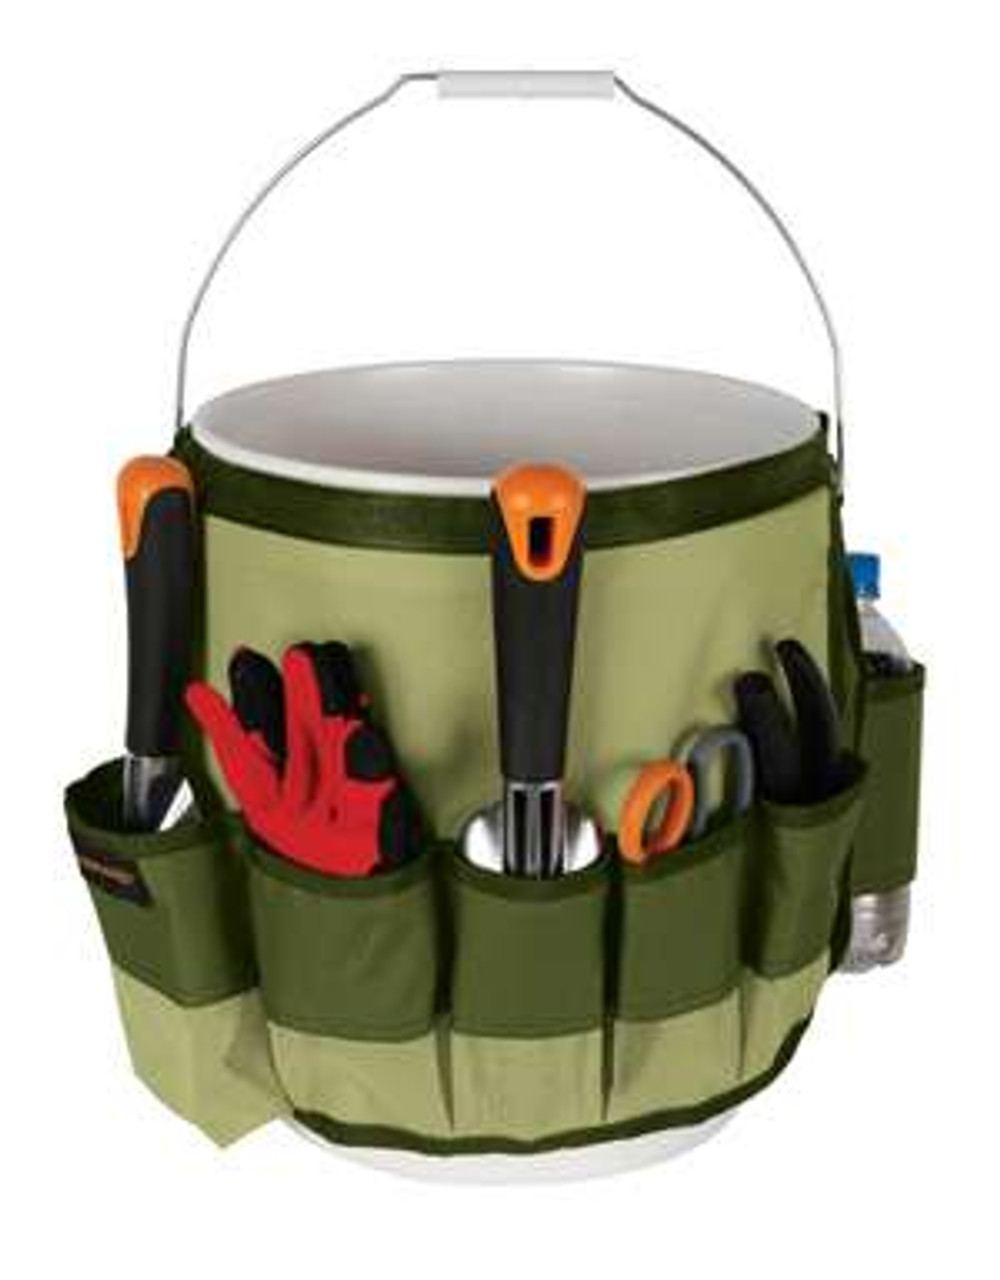 Savings-Smart McKee's 37 Buckanizer - Wash Bucket Caddy, bucket caddy